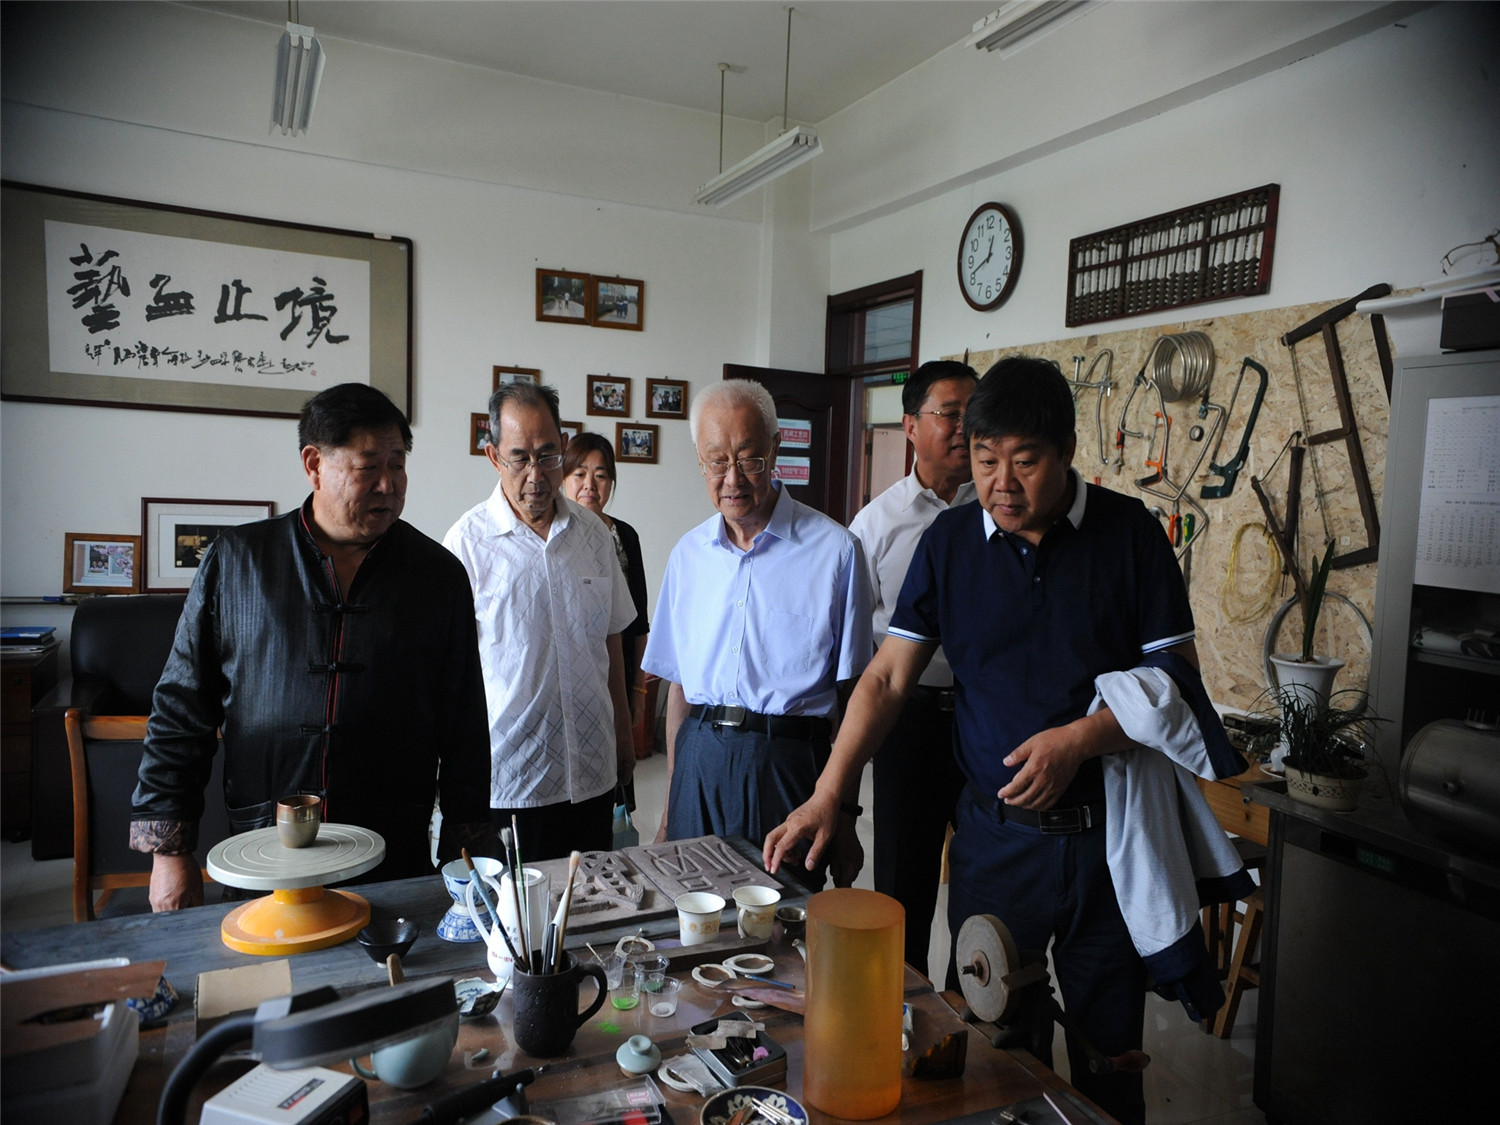 市特教中心组织“庆祝淄博特殊教育60周年退休及调出教职工代表座谈会”